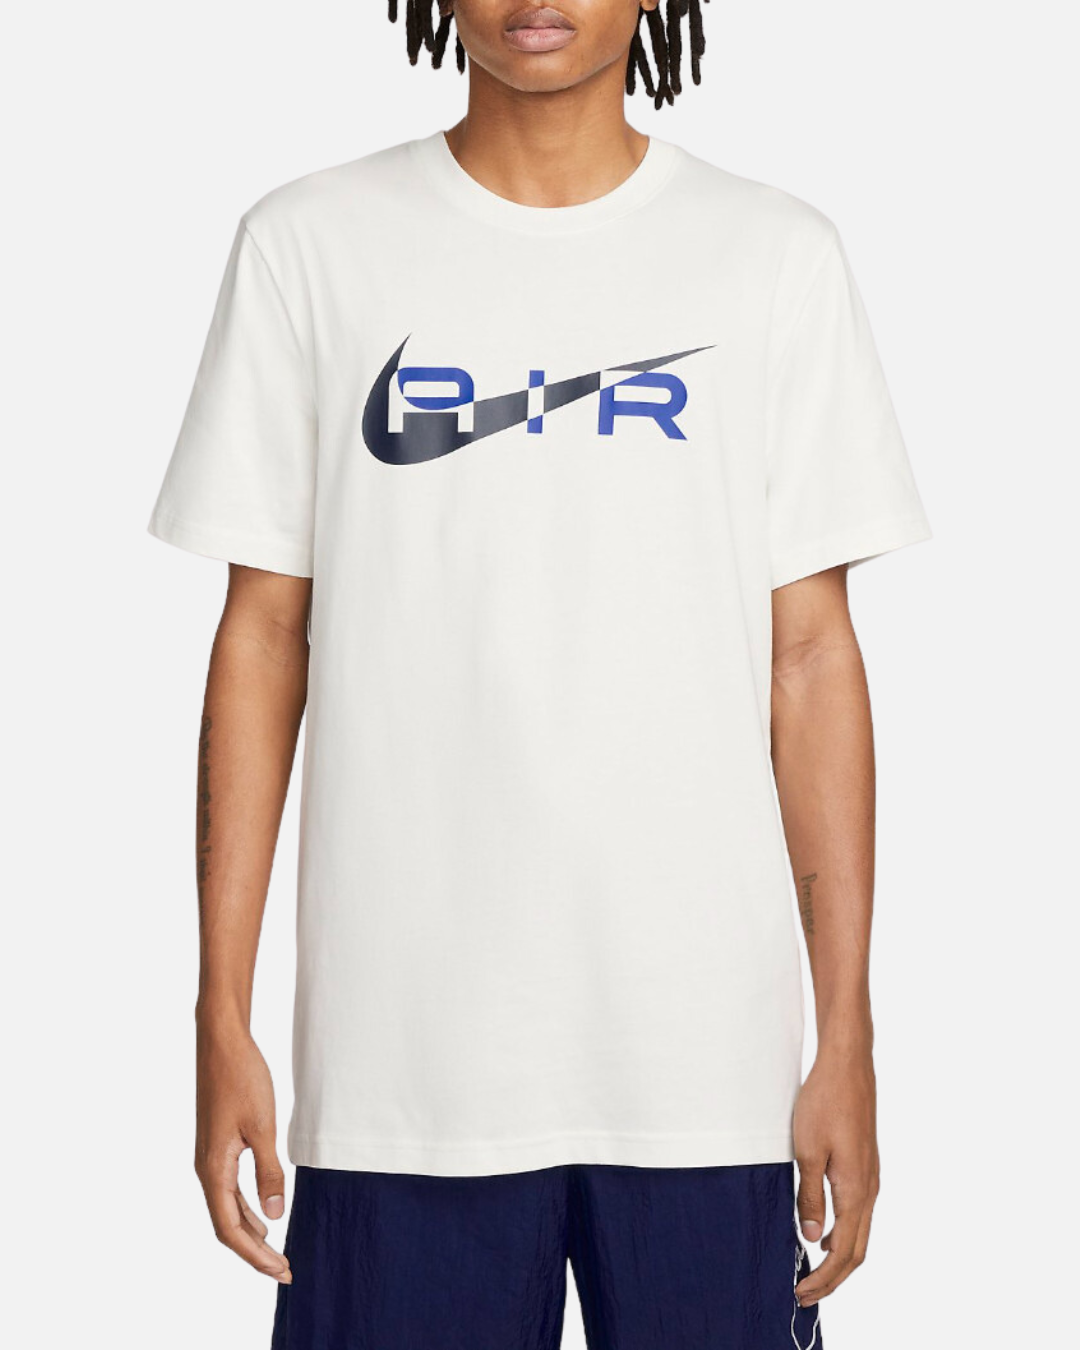 T-Shirt Nike Air Graphic - Blanc/Noir/Bleu